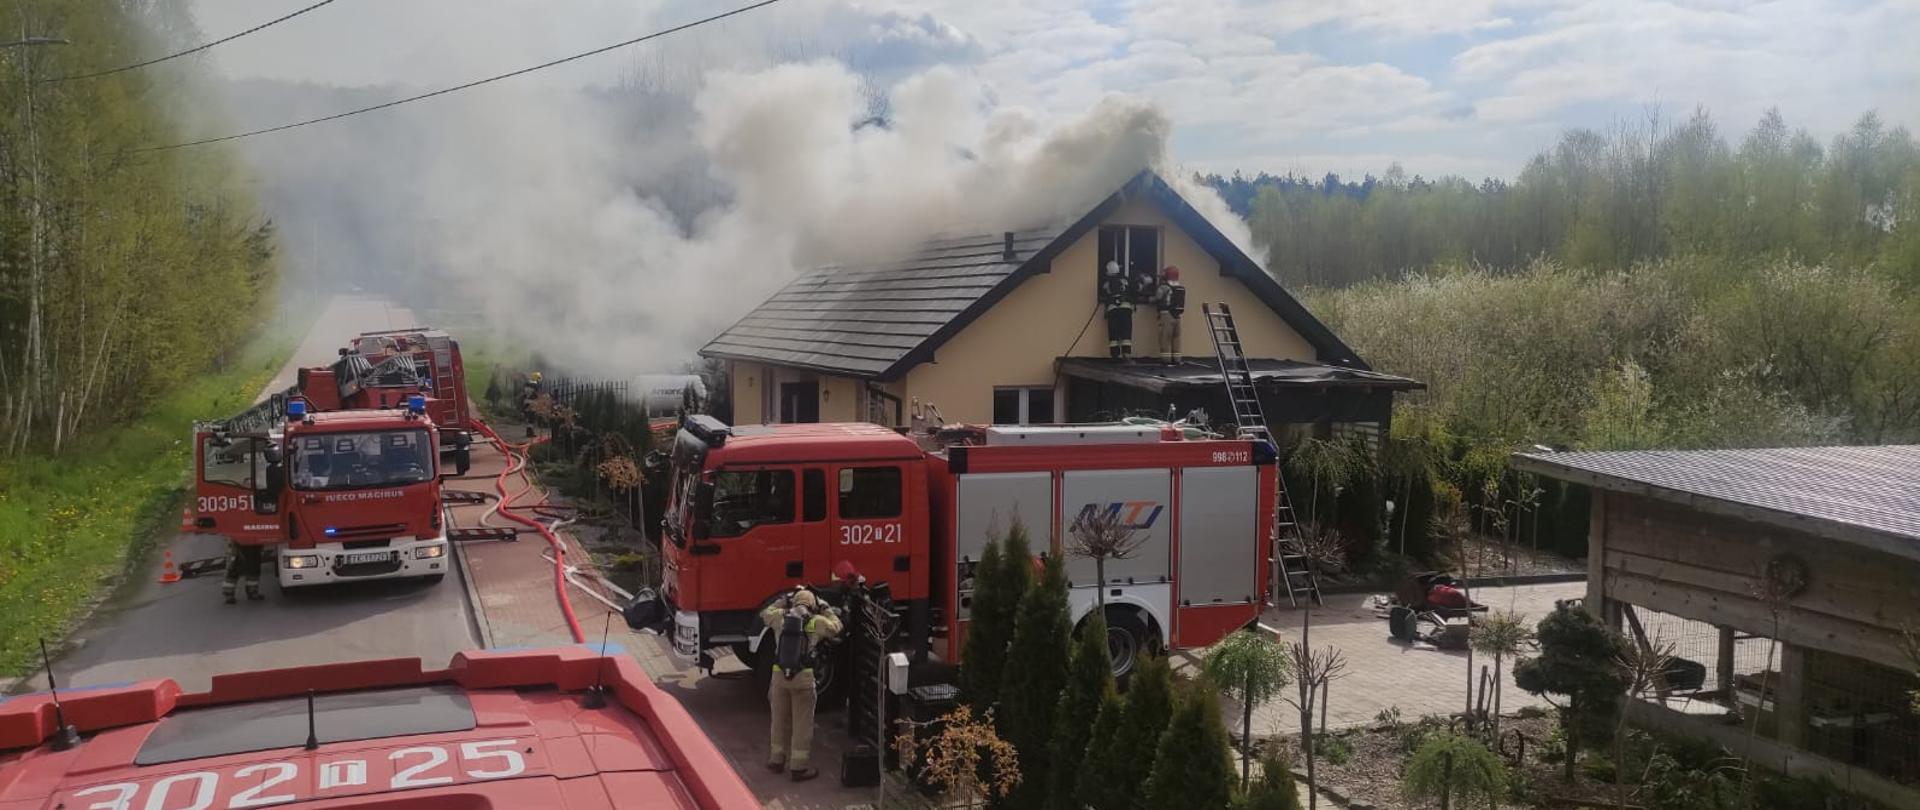 Zdjęcie przedstawia budynek w którym wybuchł pożar. Wokół domu stoją samochody strażackie. Z dachu unosi gęsta chmura dymu i pary wodnej.